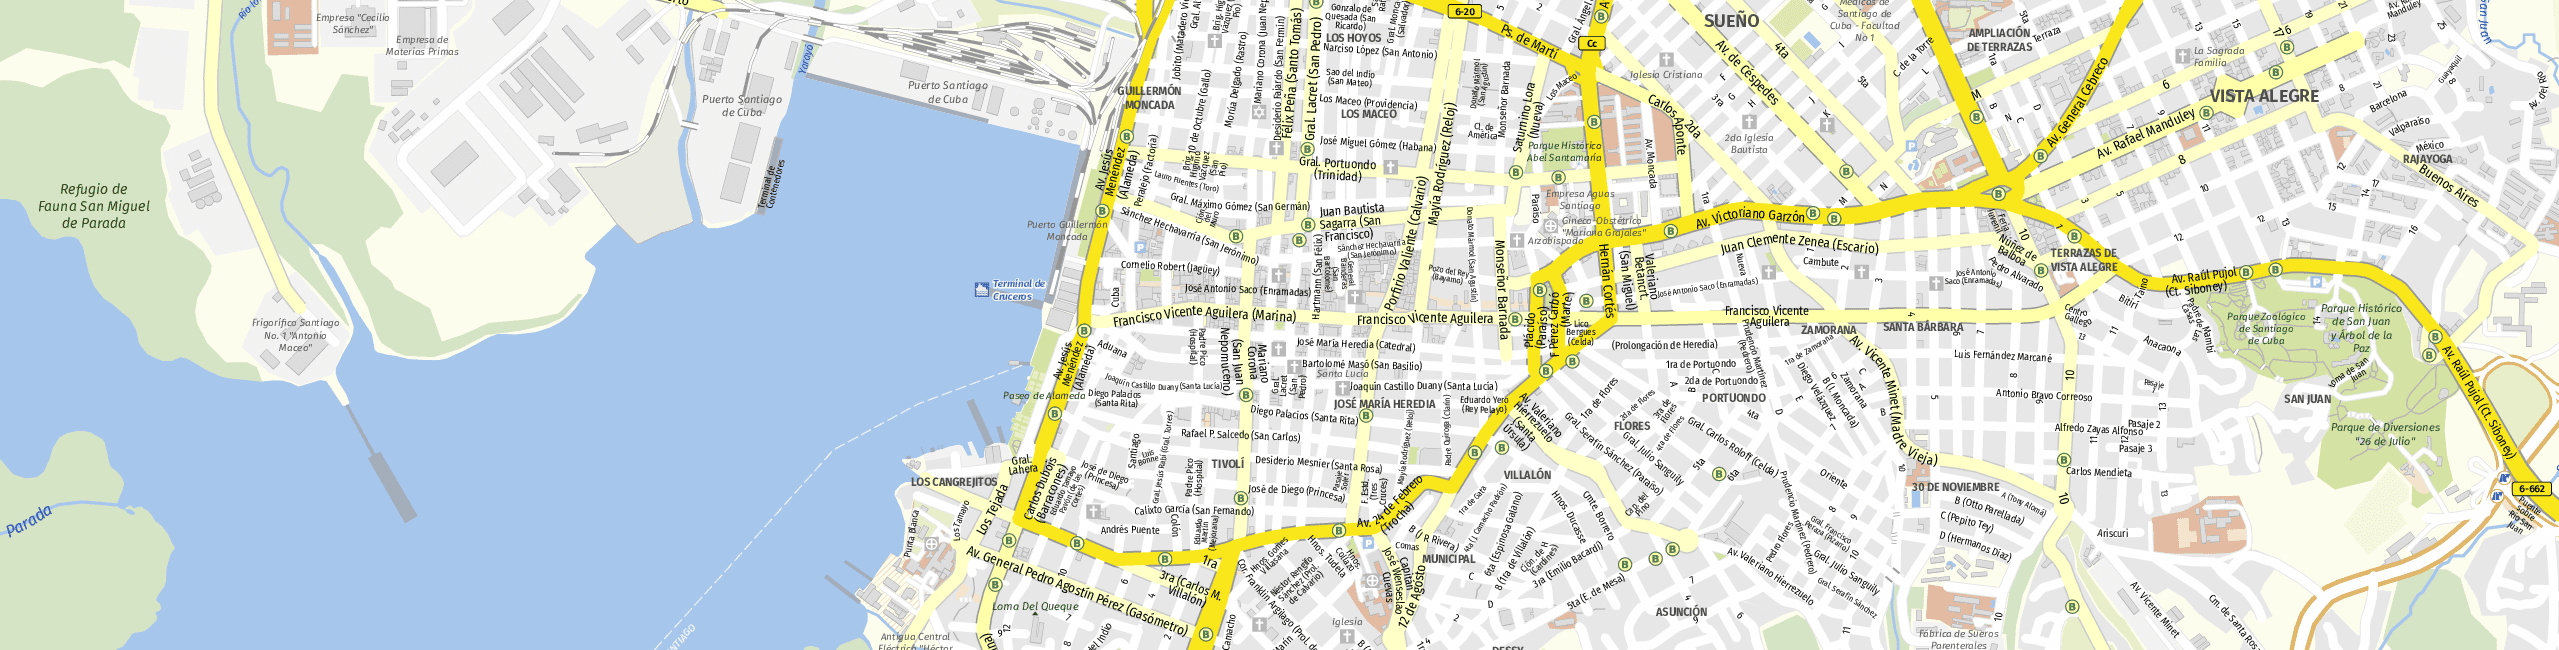 Stadtplan Santiago de Cuba zum Downloaden.